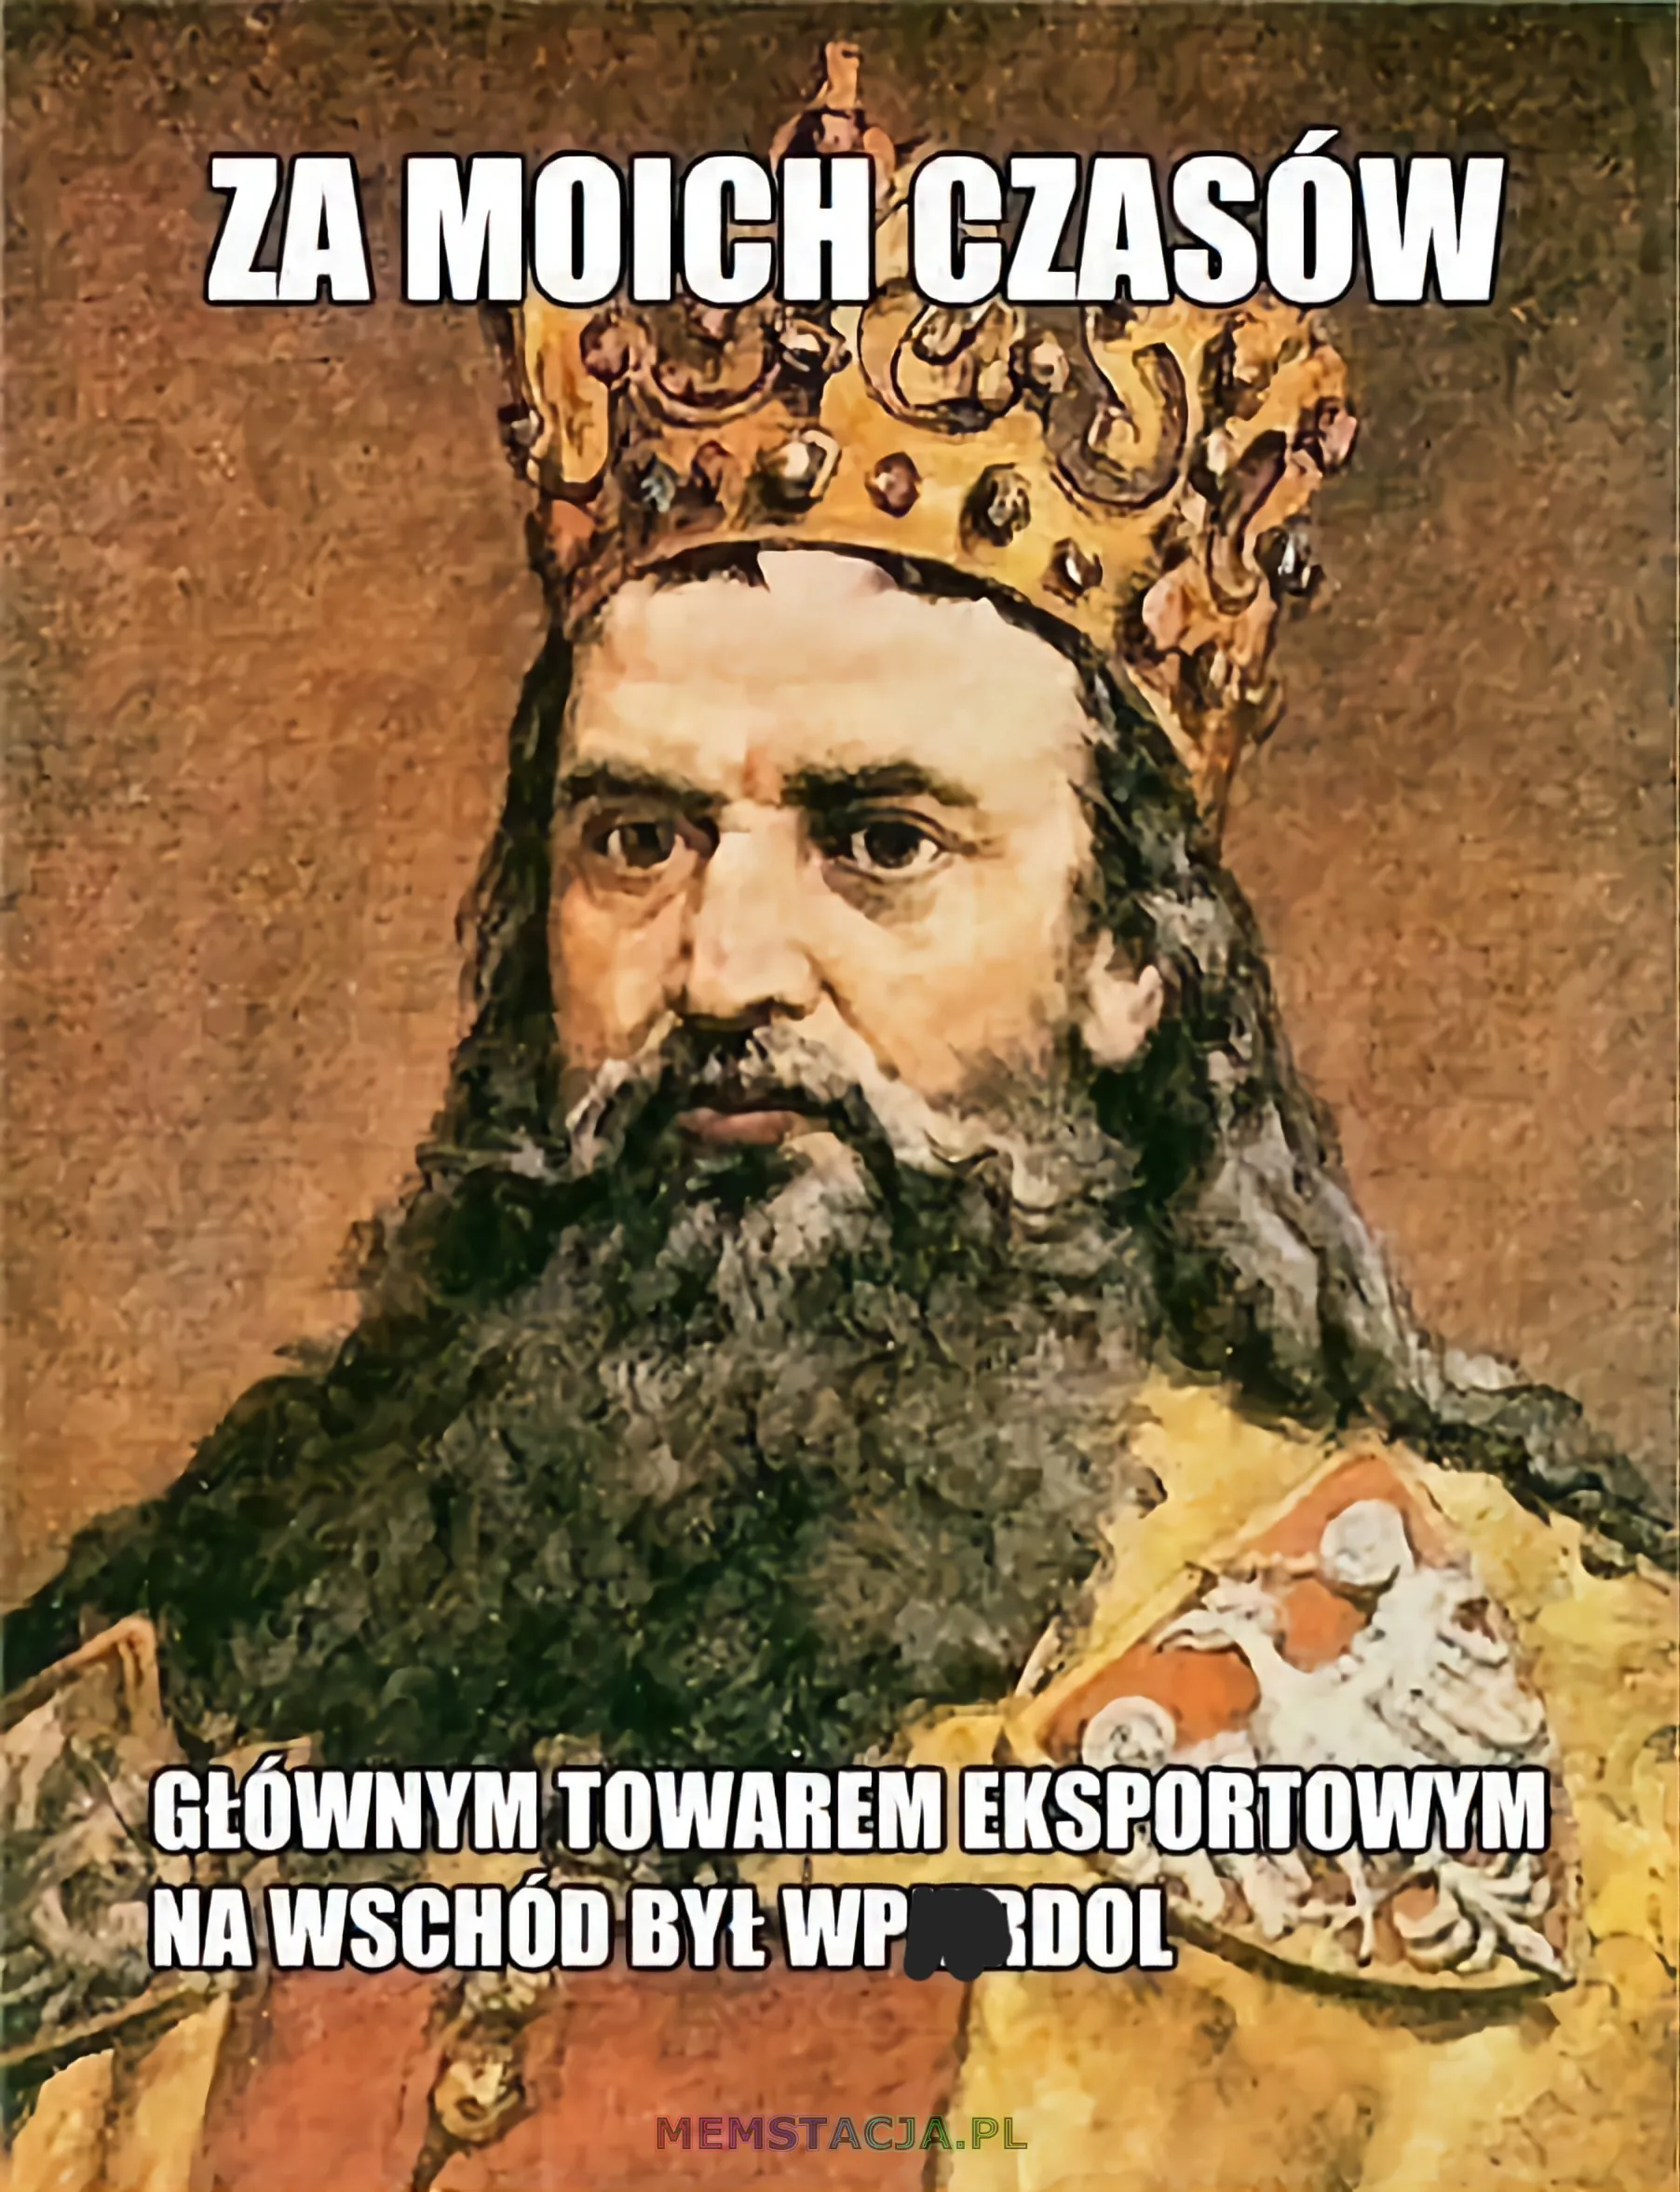 Obraz przedstawiający Króla Polski, Kazimierza Wielkiego: 'Za moich czasów głównym towarem eksportowym na wschód był wpie*dol.'